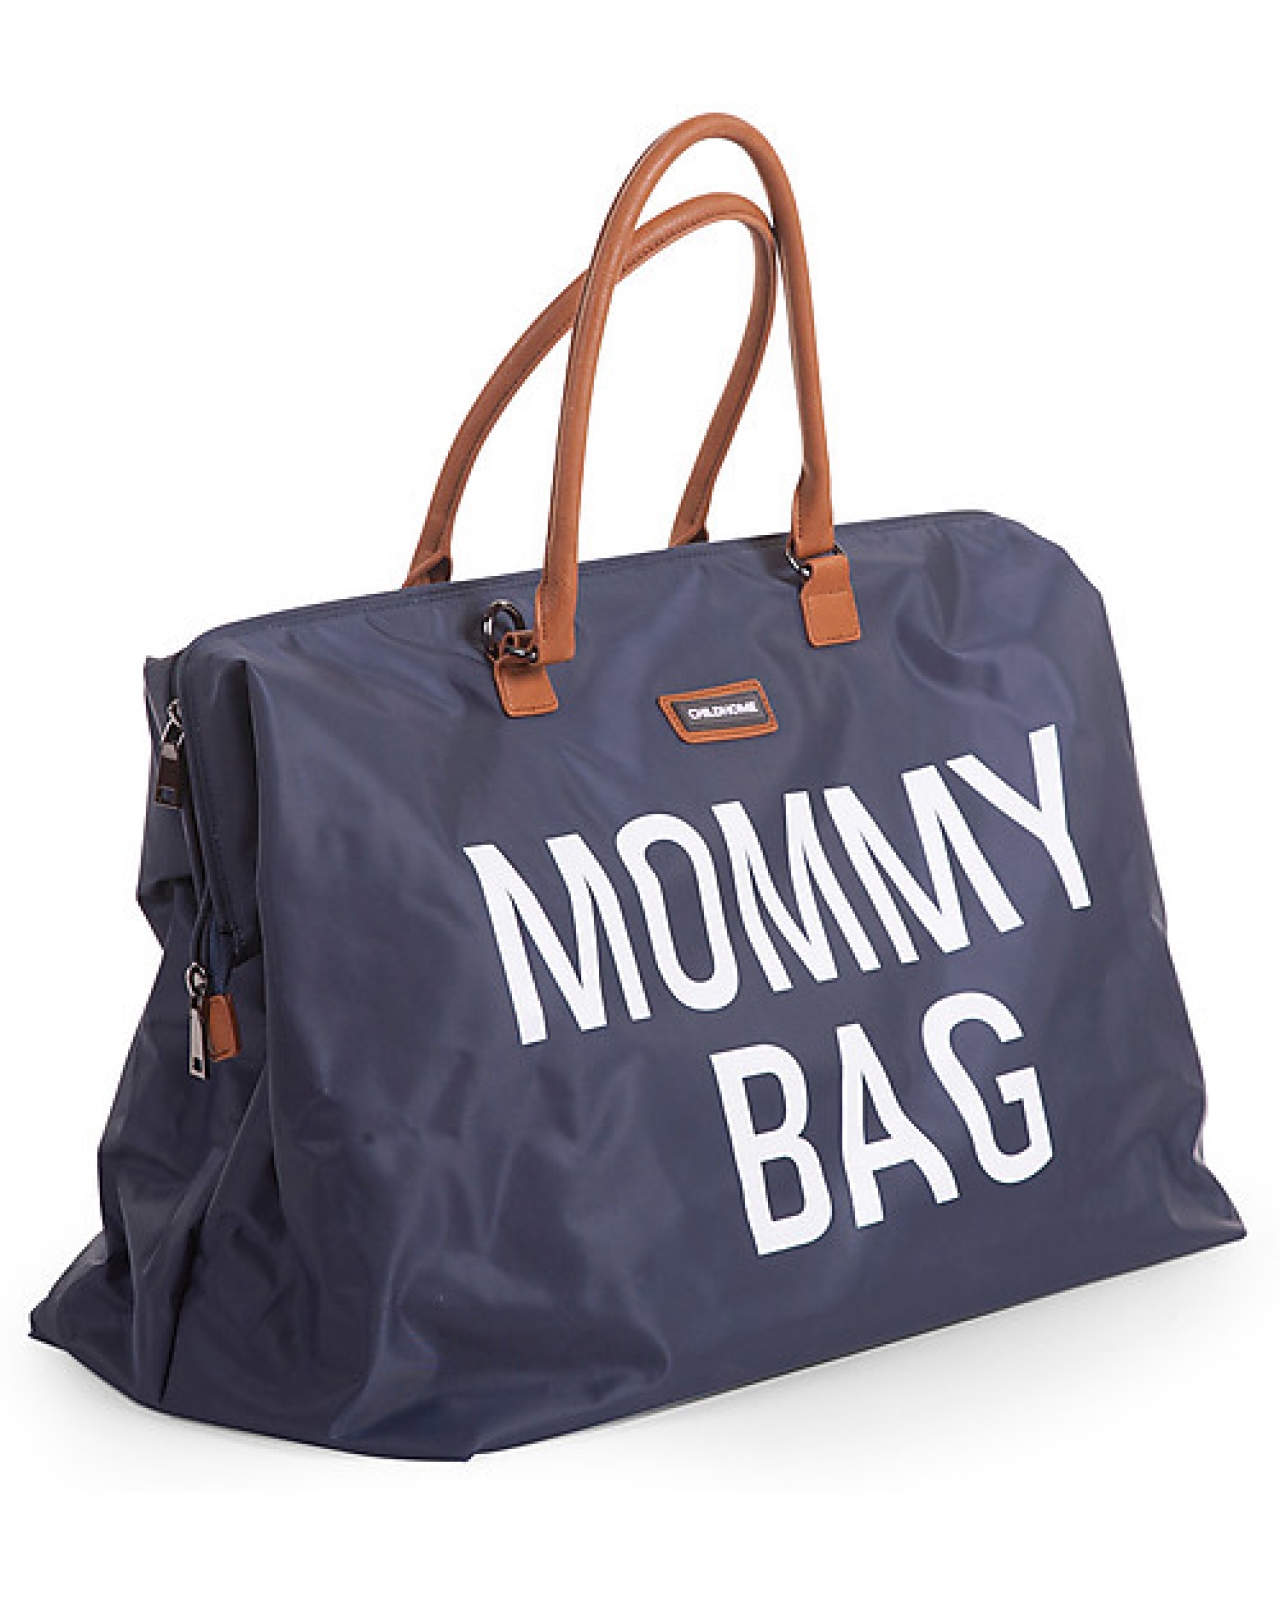 Childhome accessori childhome mommy bag borsa fasciatoio blu